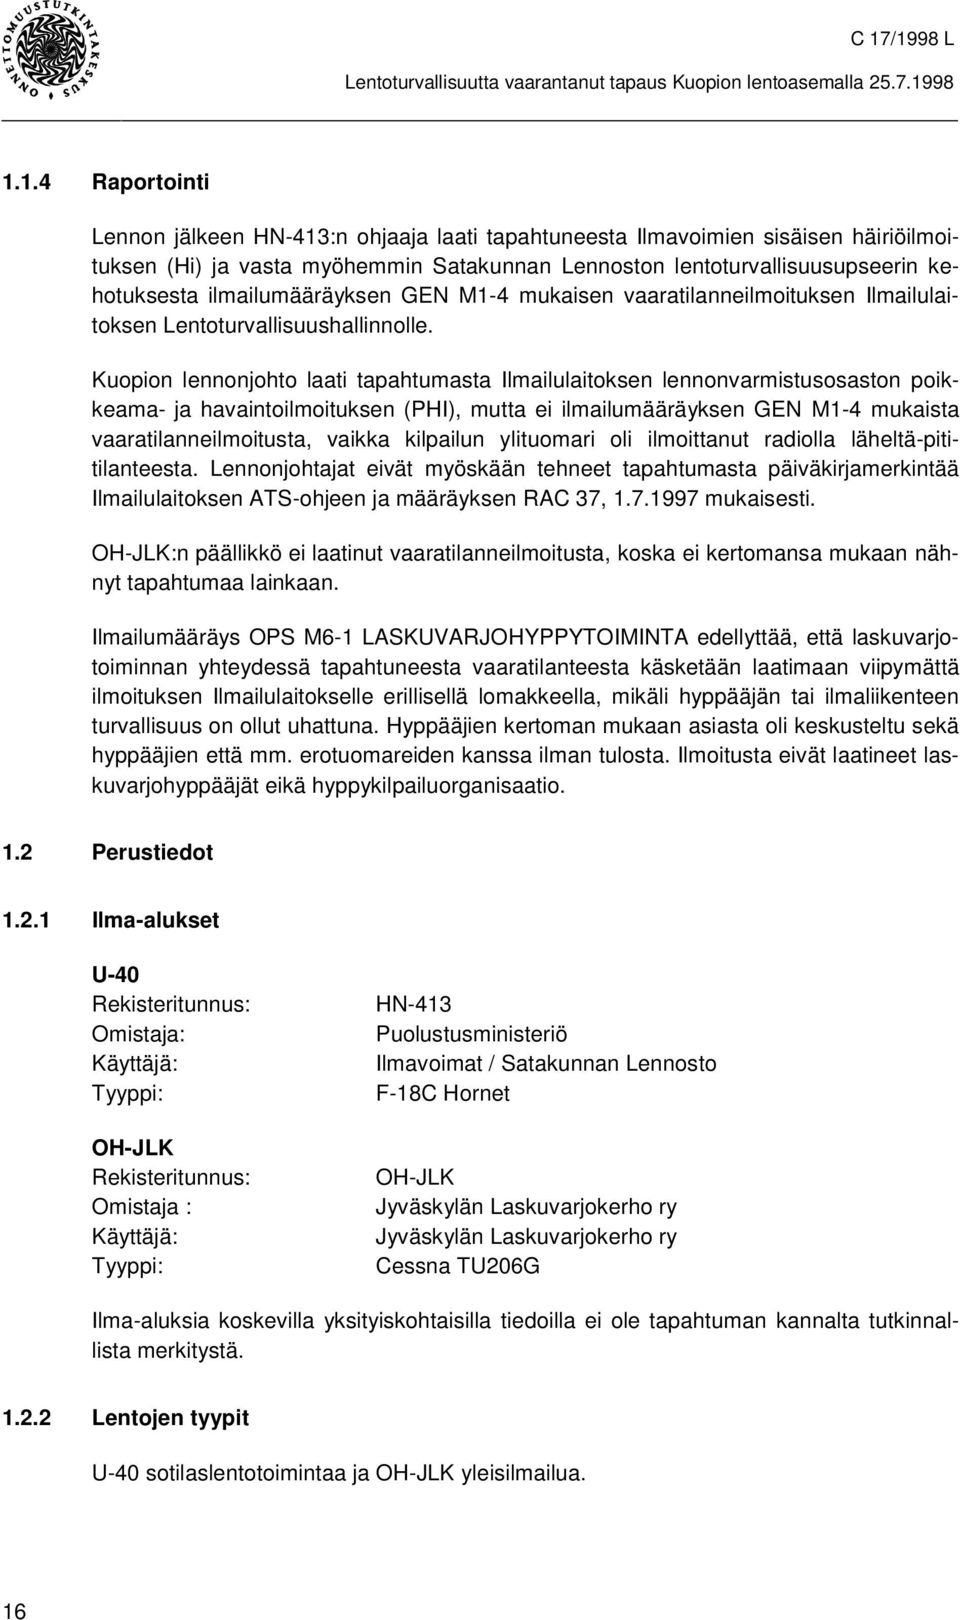 Kuopion lennonjohto laati tapahtumasta Ilmailulaitoksen lennonvarmistusosaston poikkeama- ja havaintoilmoituksen (PHI), mutta ei ilmailumääräyksen GEN M1-4 mukaista vaaratilanneilmoitusta, vaikka